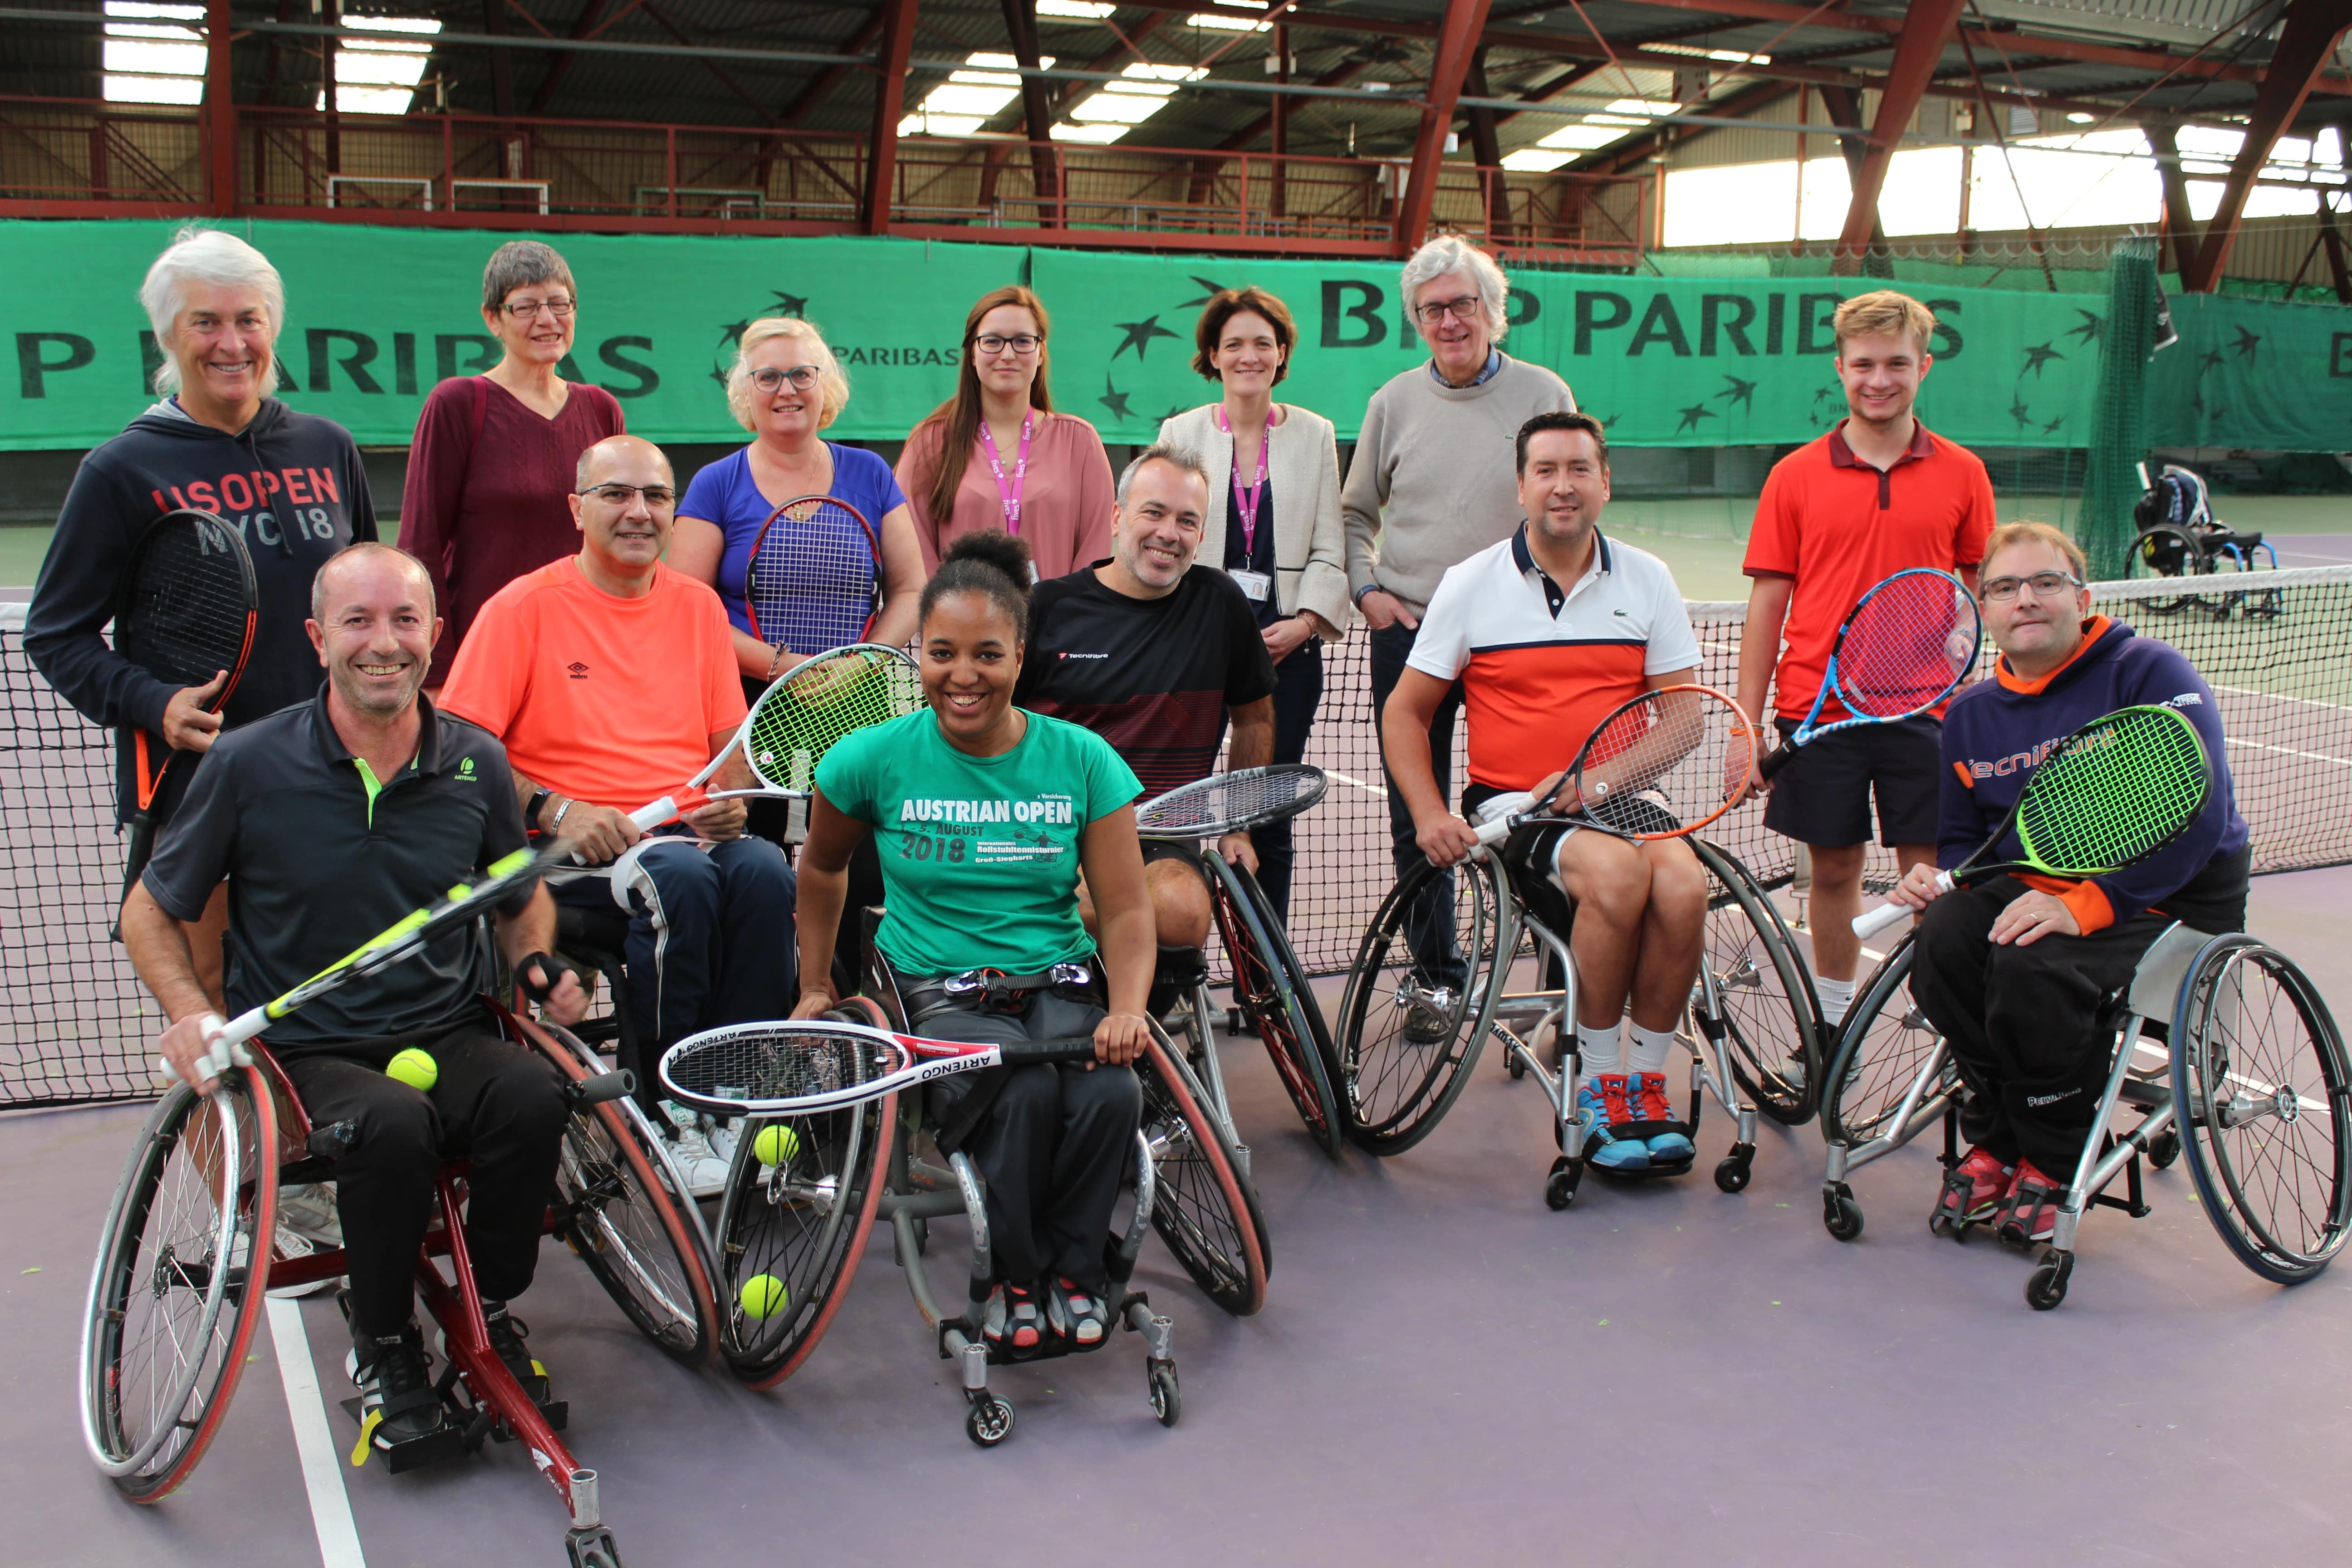 De nombreuses associations sportives sont accessibles aux personnes à mobilité réduite ou porteuses de handicap.